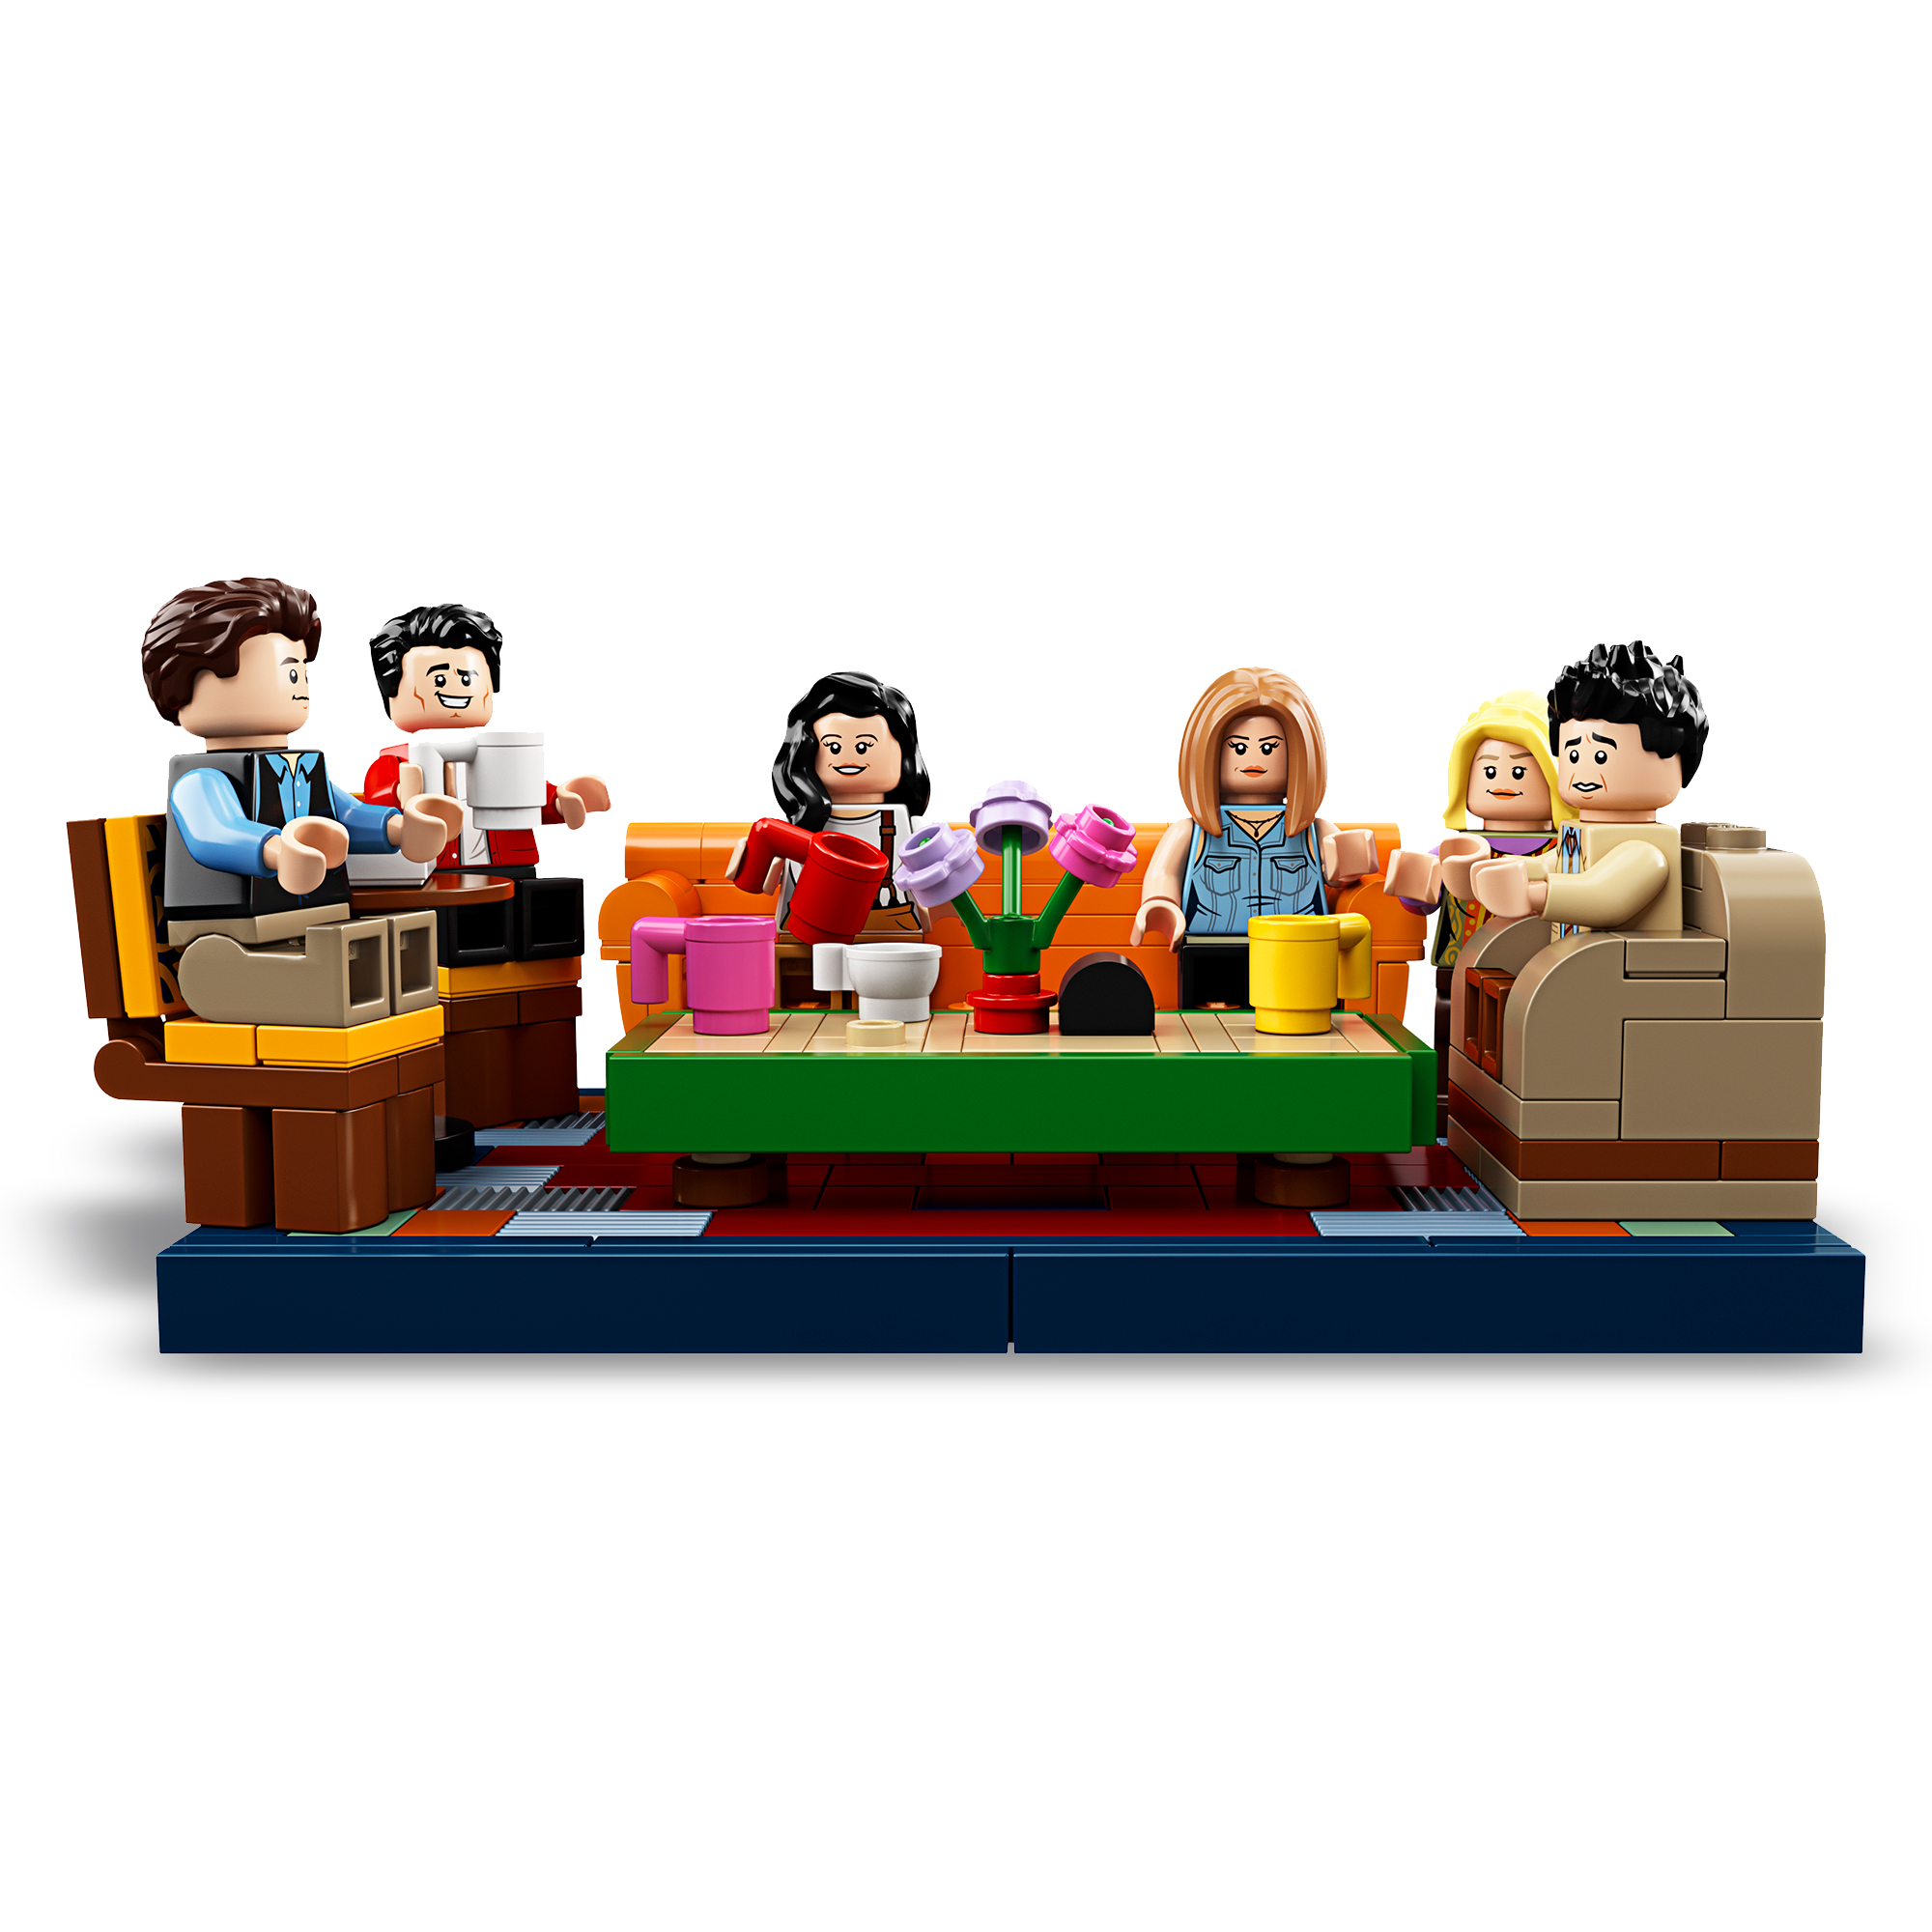 Lego 21319 - central perk - LEGO IDEAS, Lego